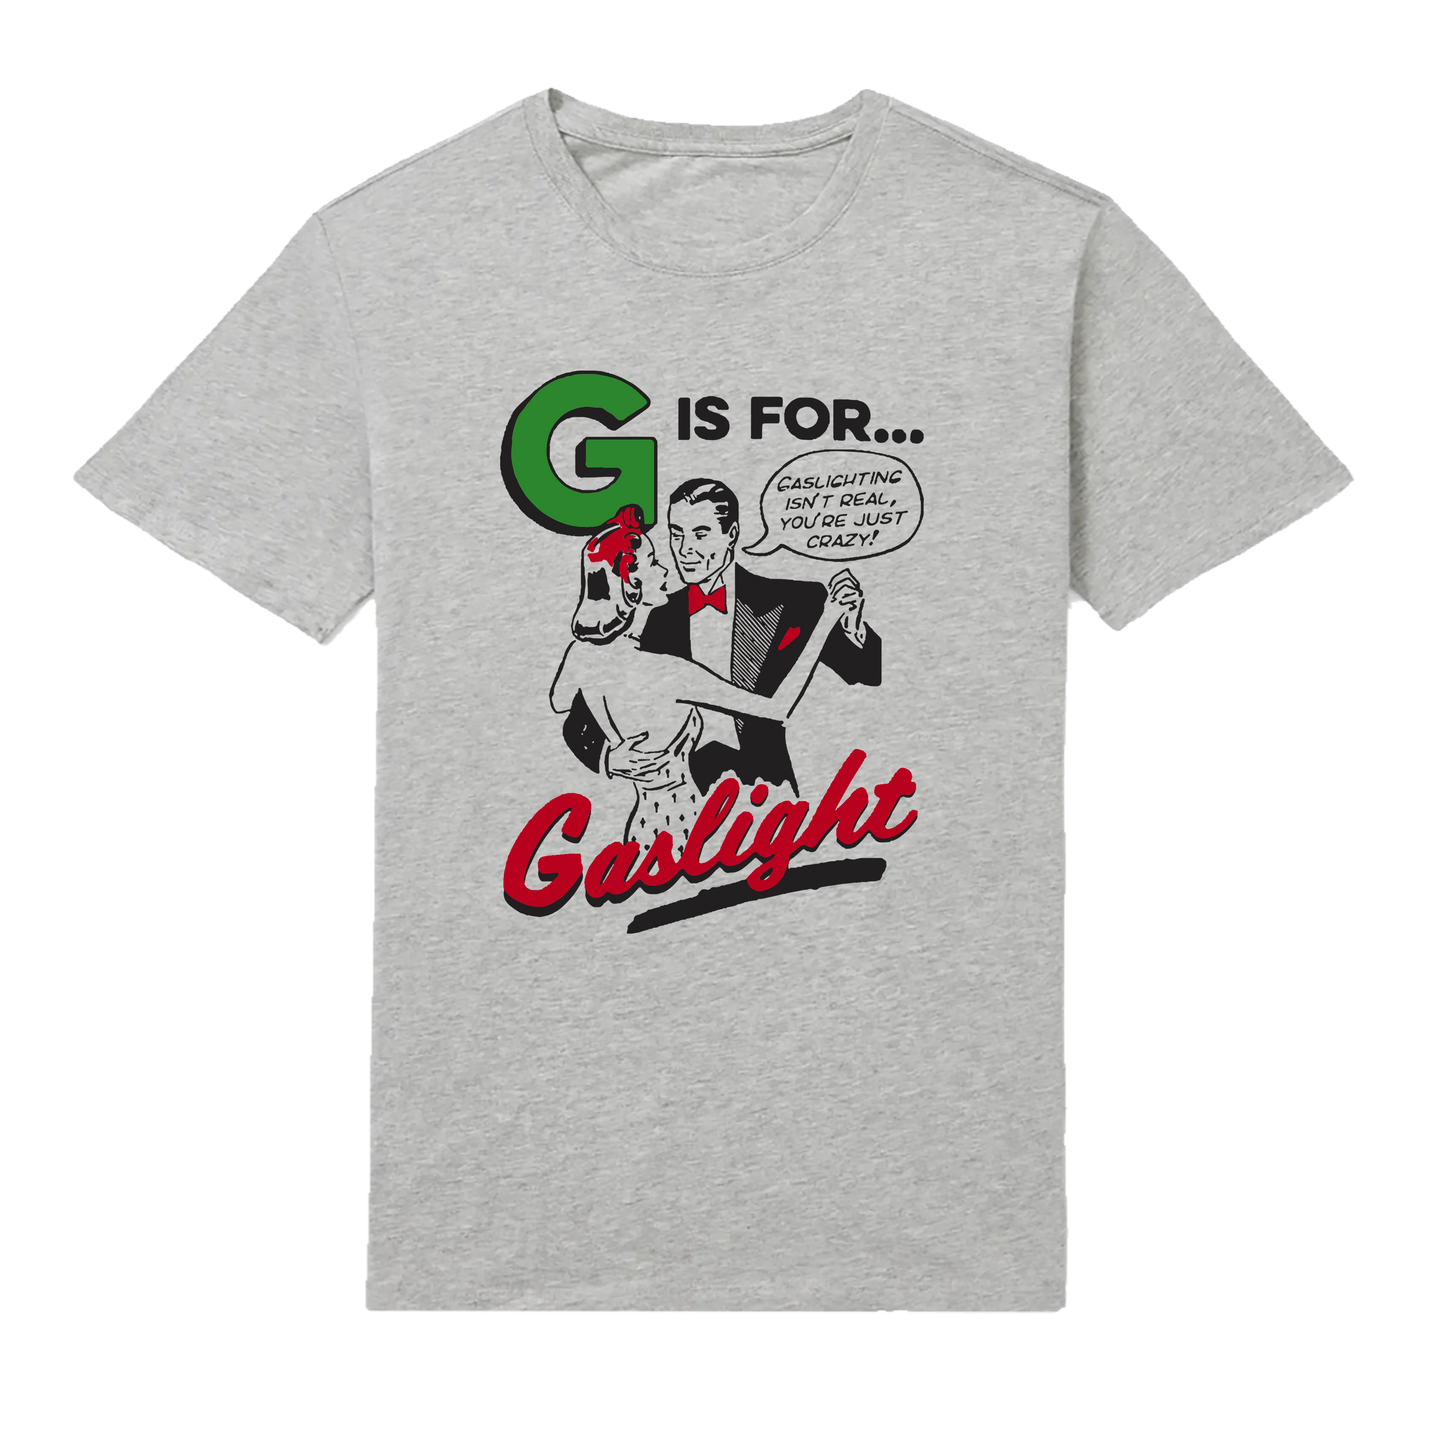 G is for Gaslight T-Shirt